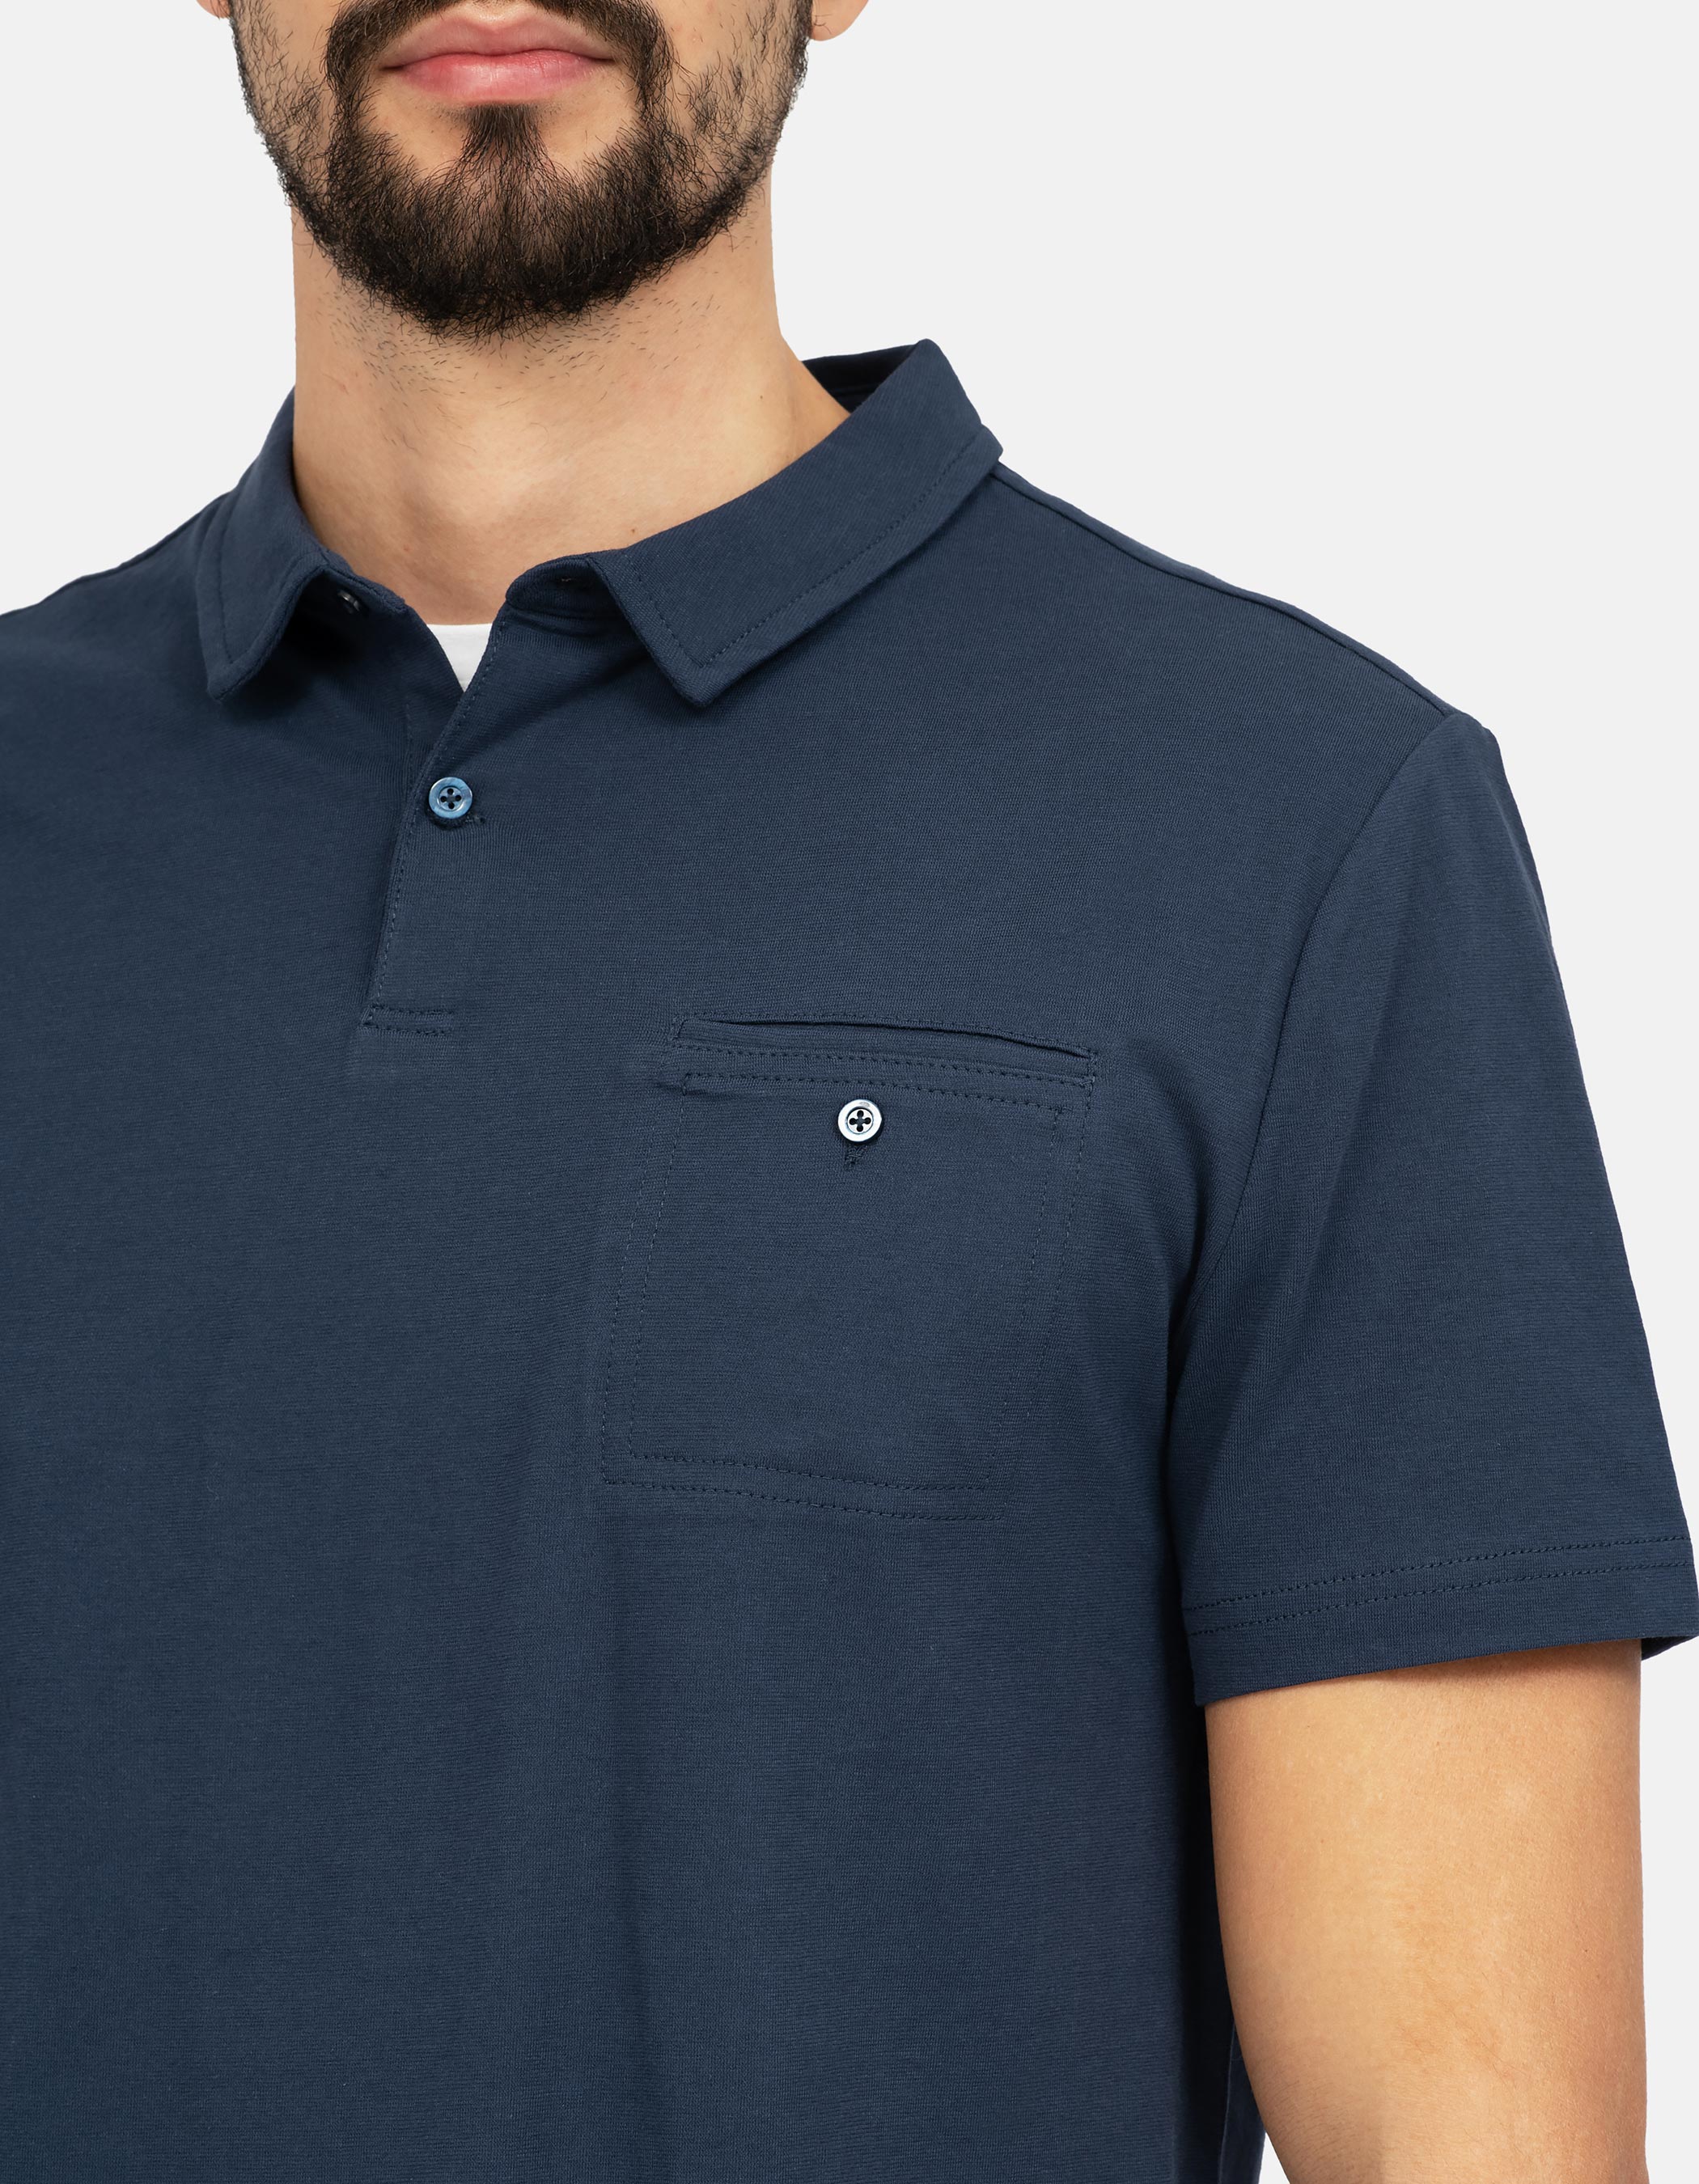 Navy blue pocket polo shirt 4